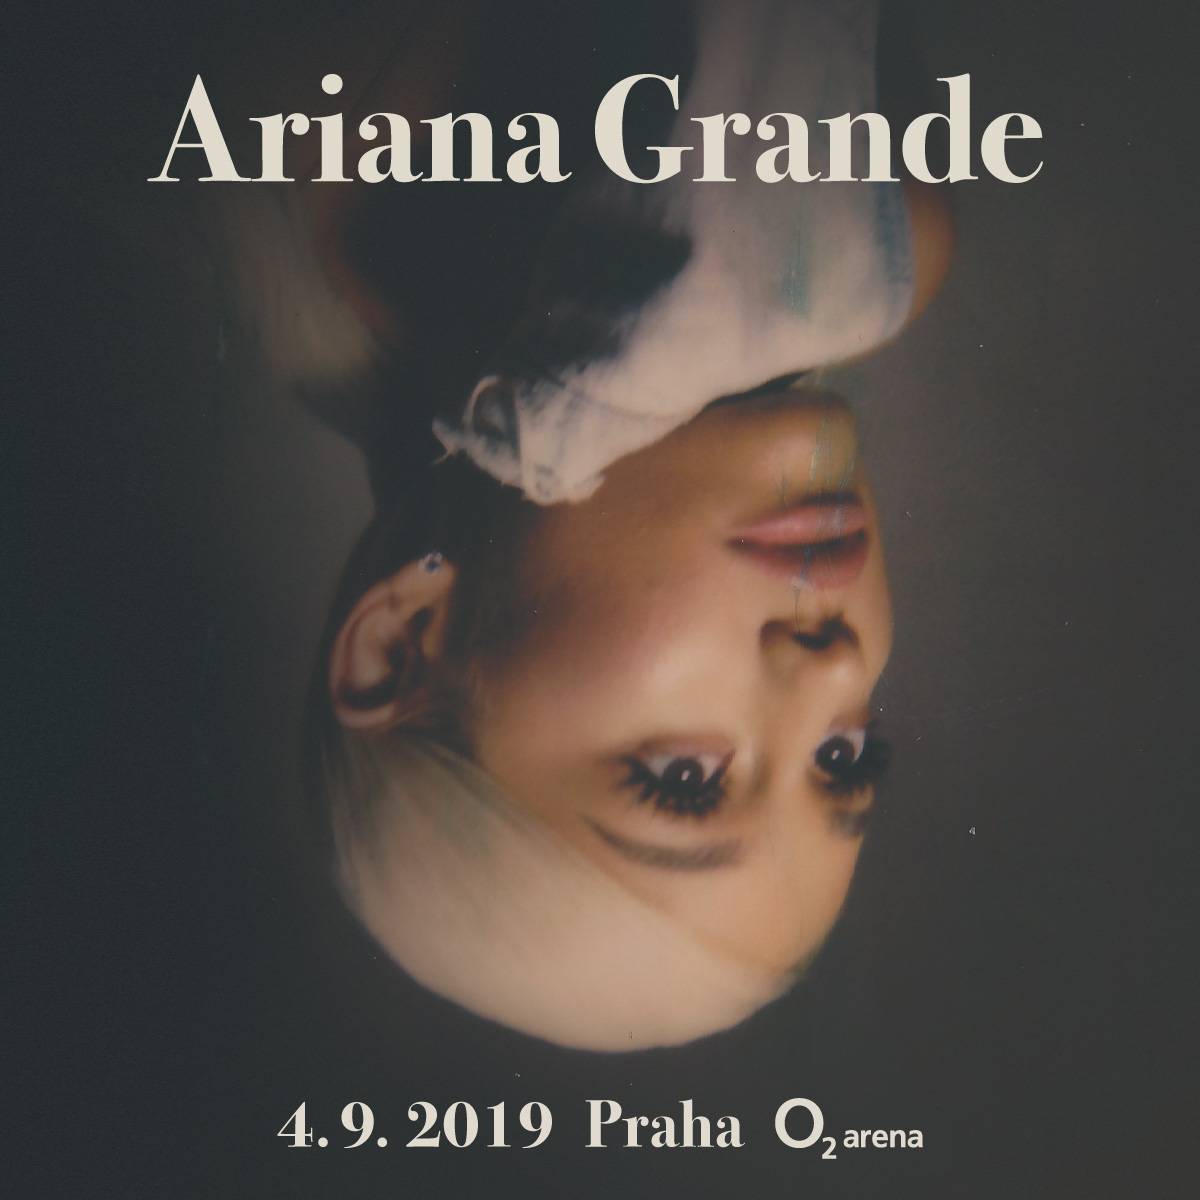 Pražský koncert Ariany Grande se z osobních důvodů zpěvačky posouvá. Proběhne o několik dní dříve